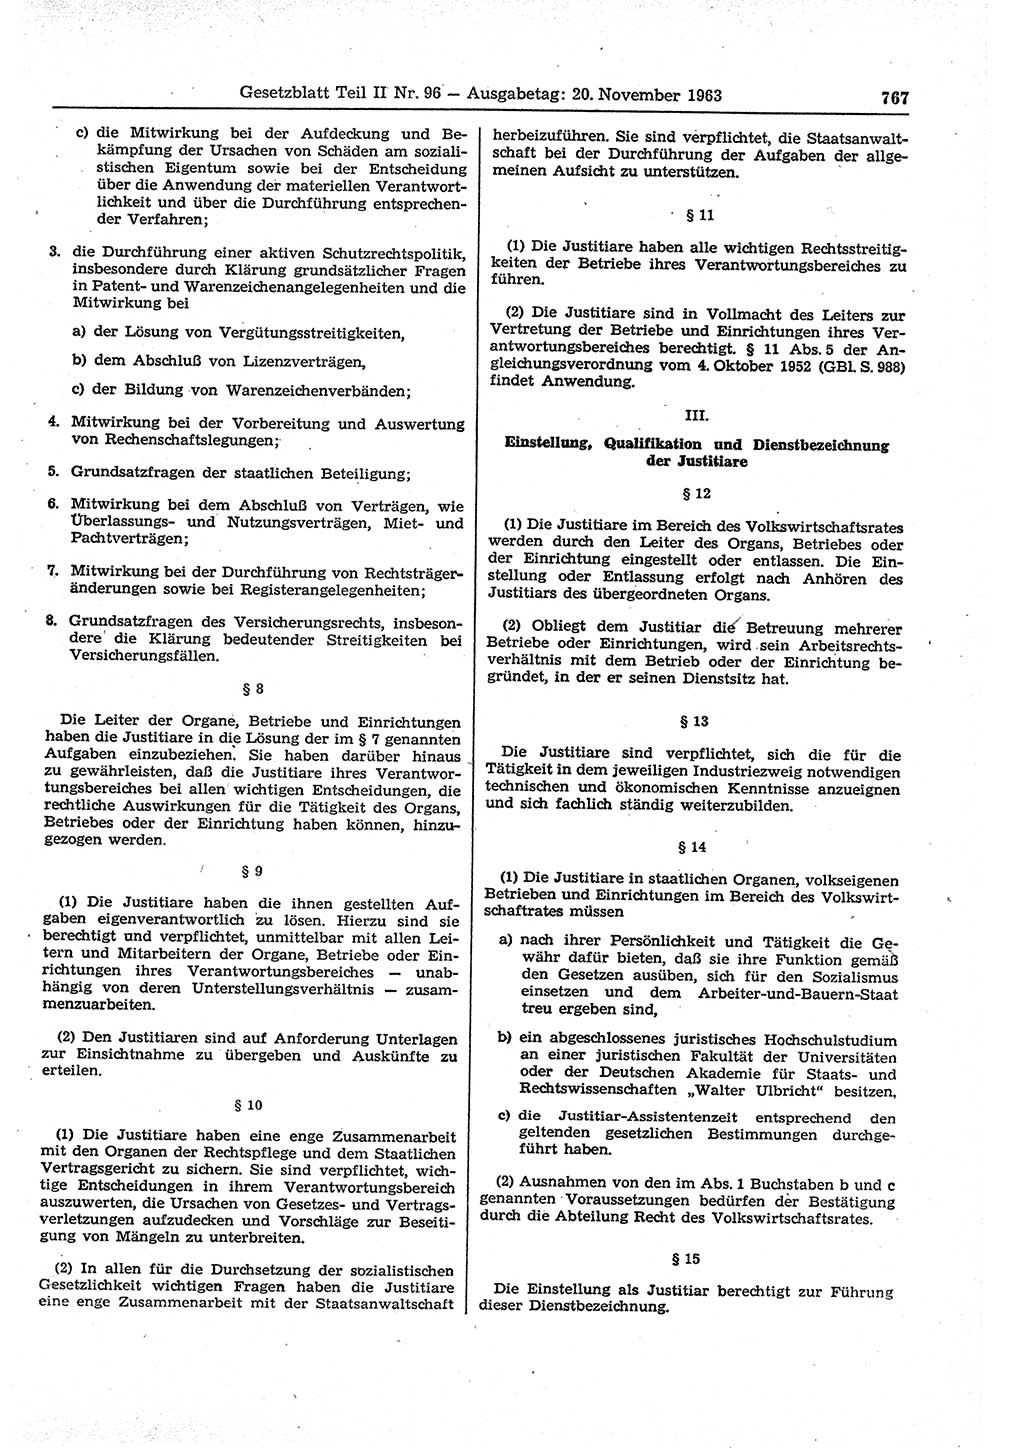 Gesetzblatt (GBl.) der Deutschen Demokratischen Republik (DDR) Teil ⅠⅠ 1963, Seite 767 (GBl. DDR ⅠⅠ 1963, S. 767)